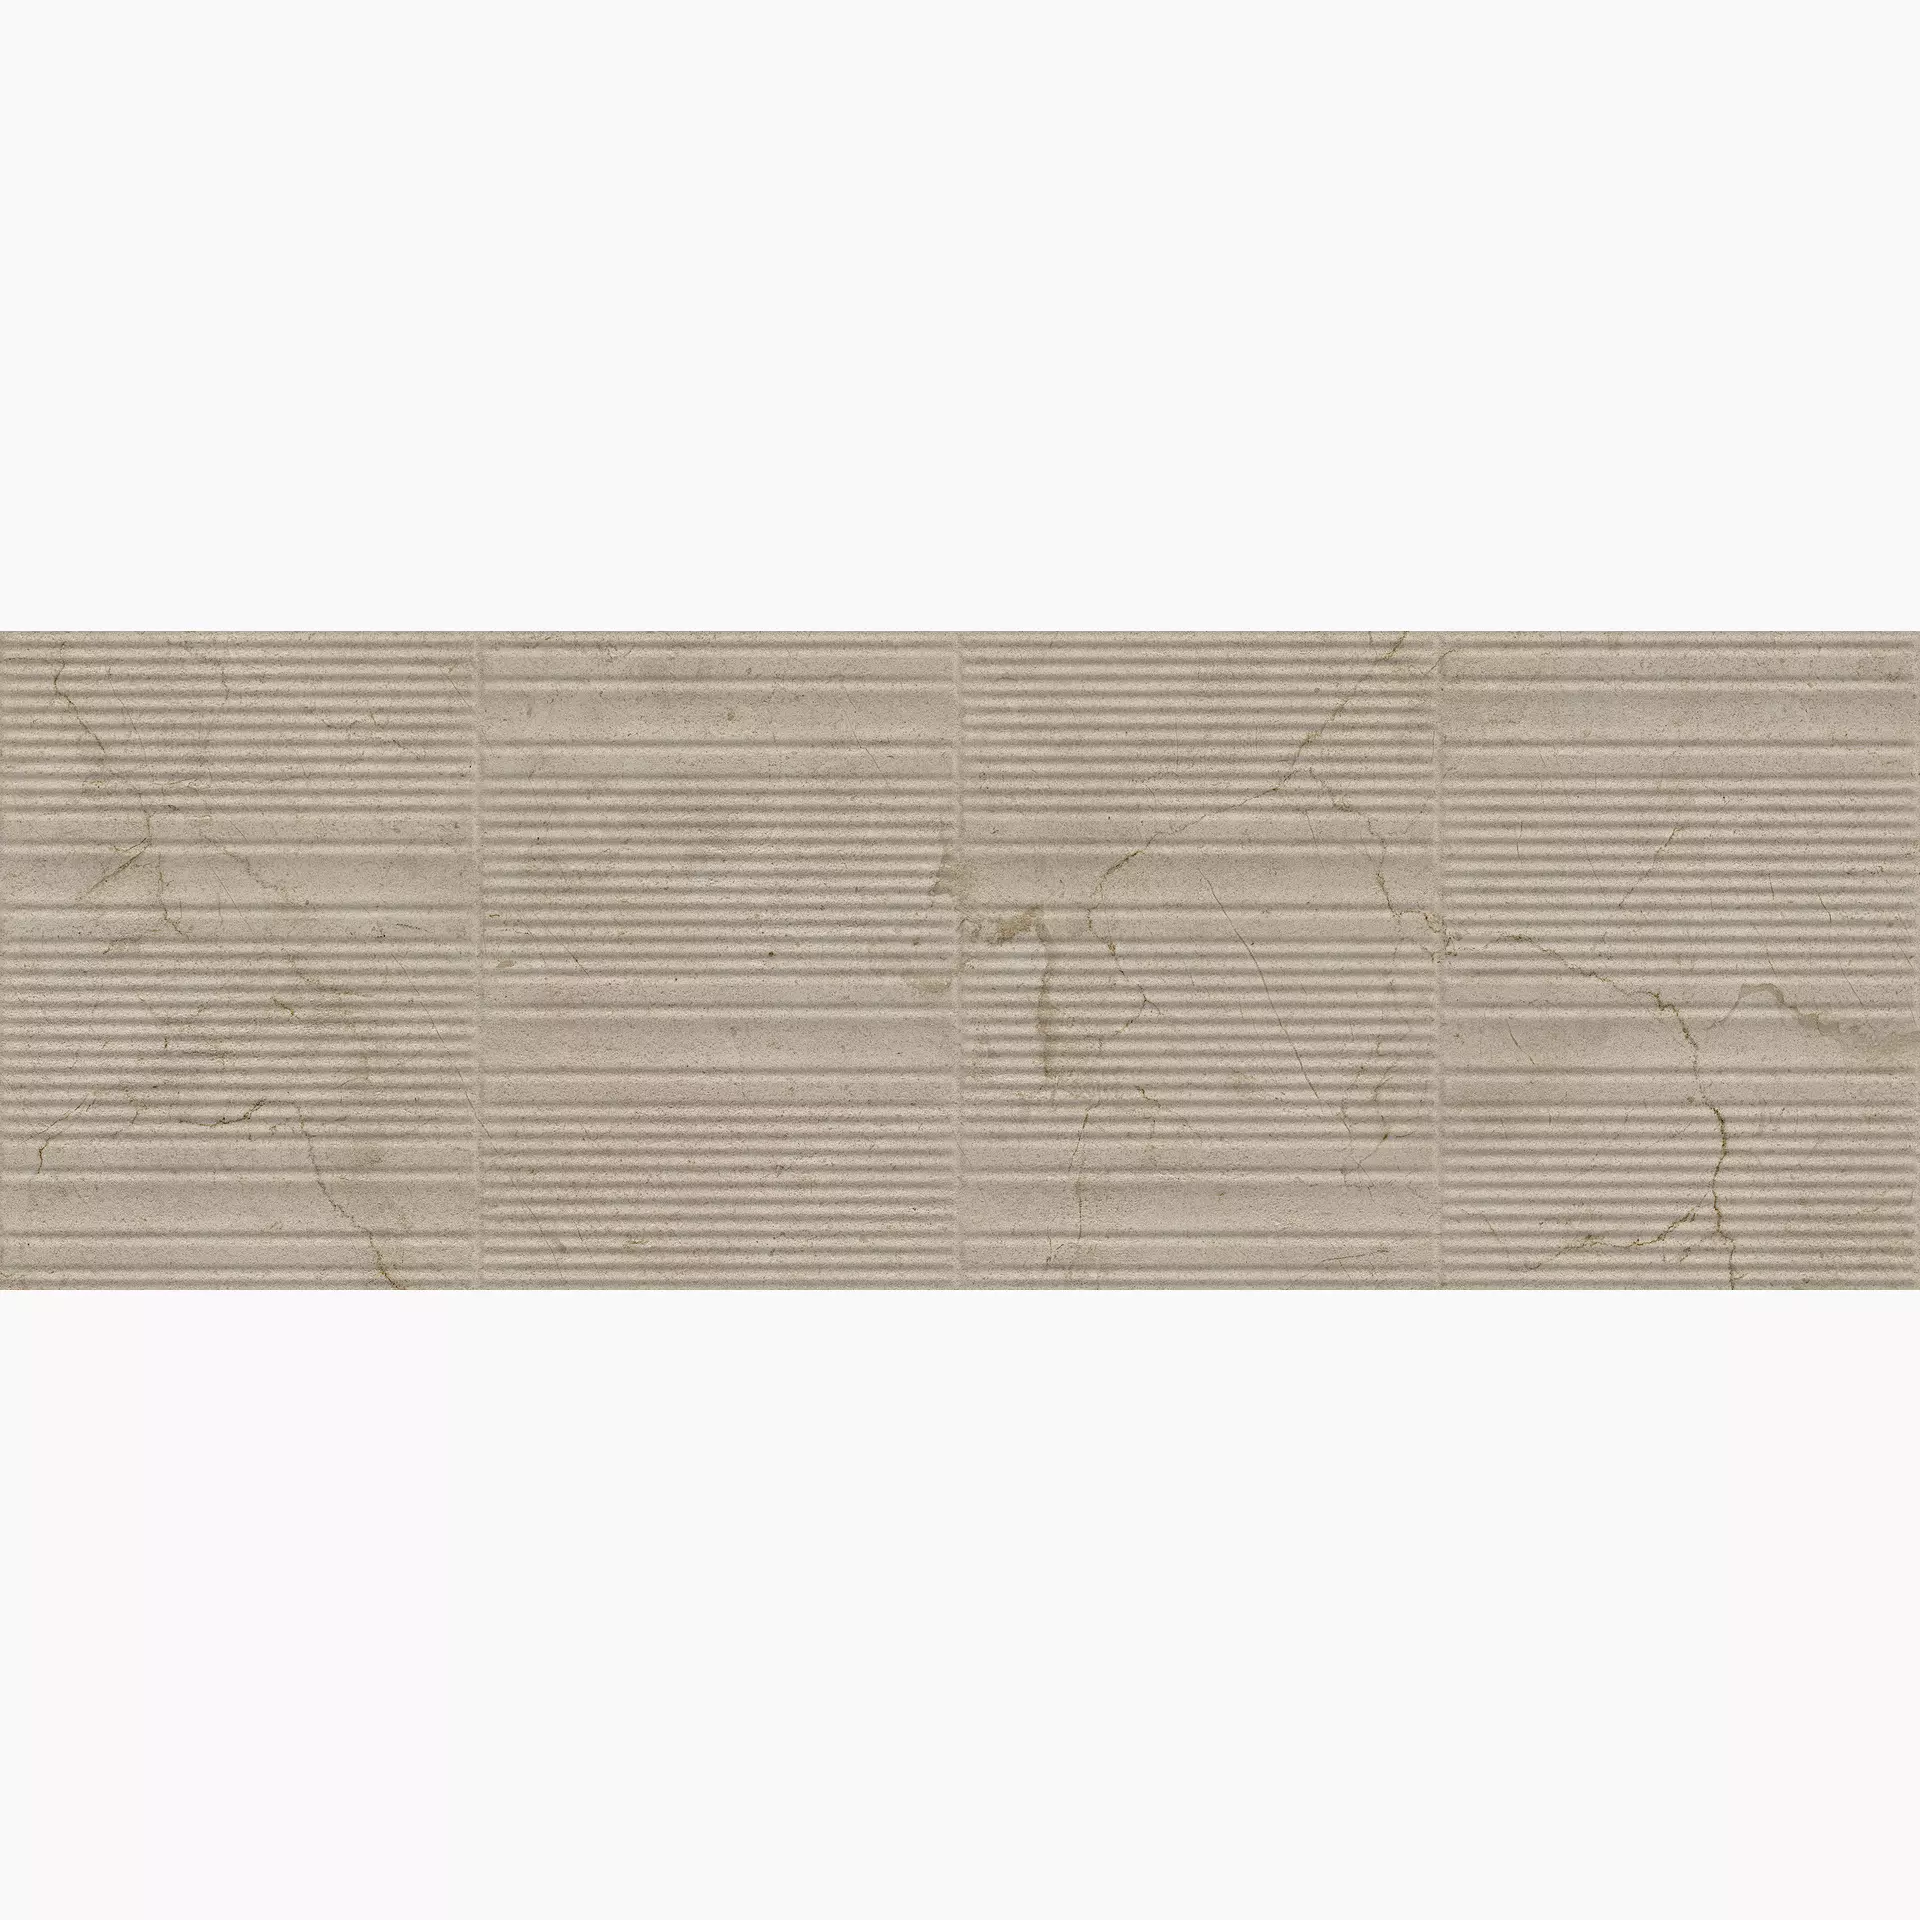 Marazzi Fabula Wall Marfil Struttura 3D Gentle MN3A 33x100cm rectified 10mm